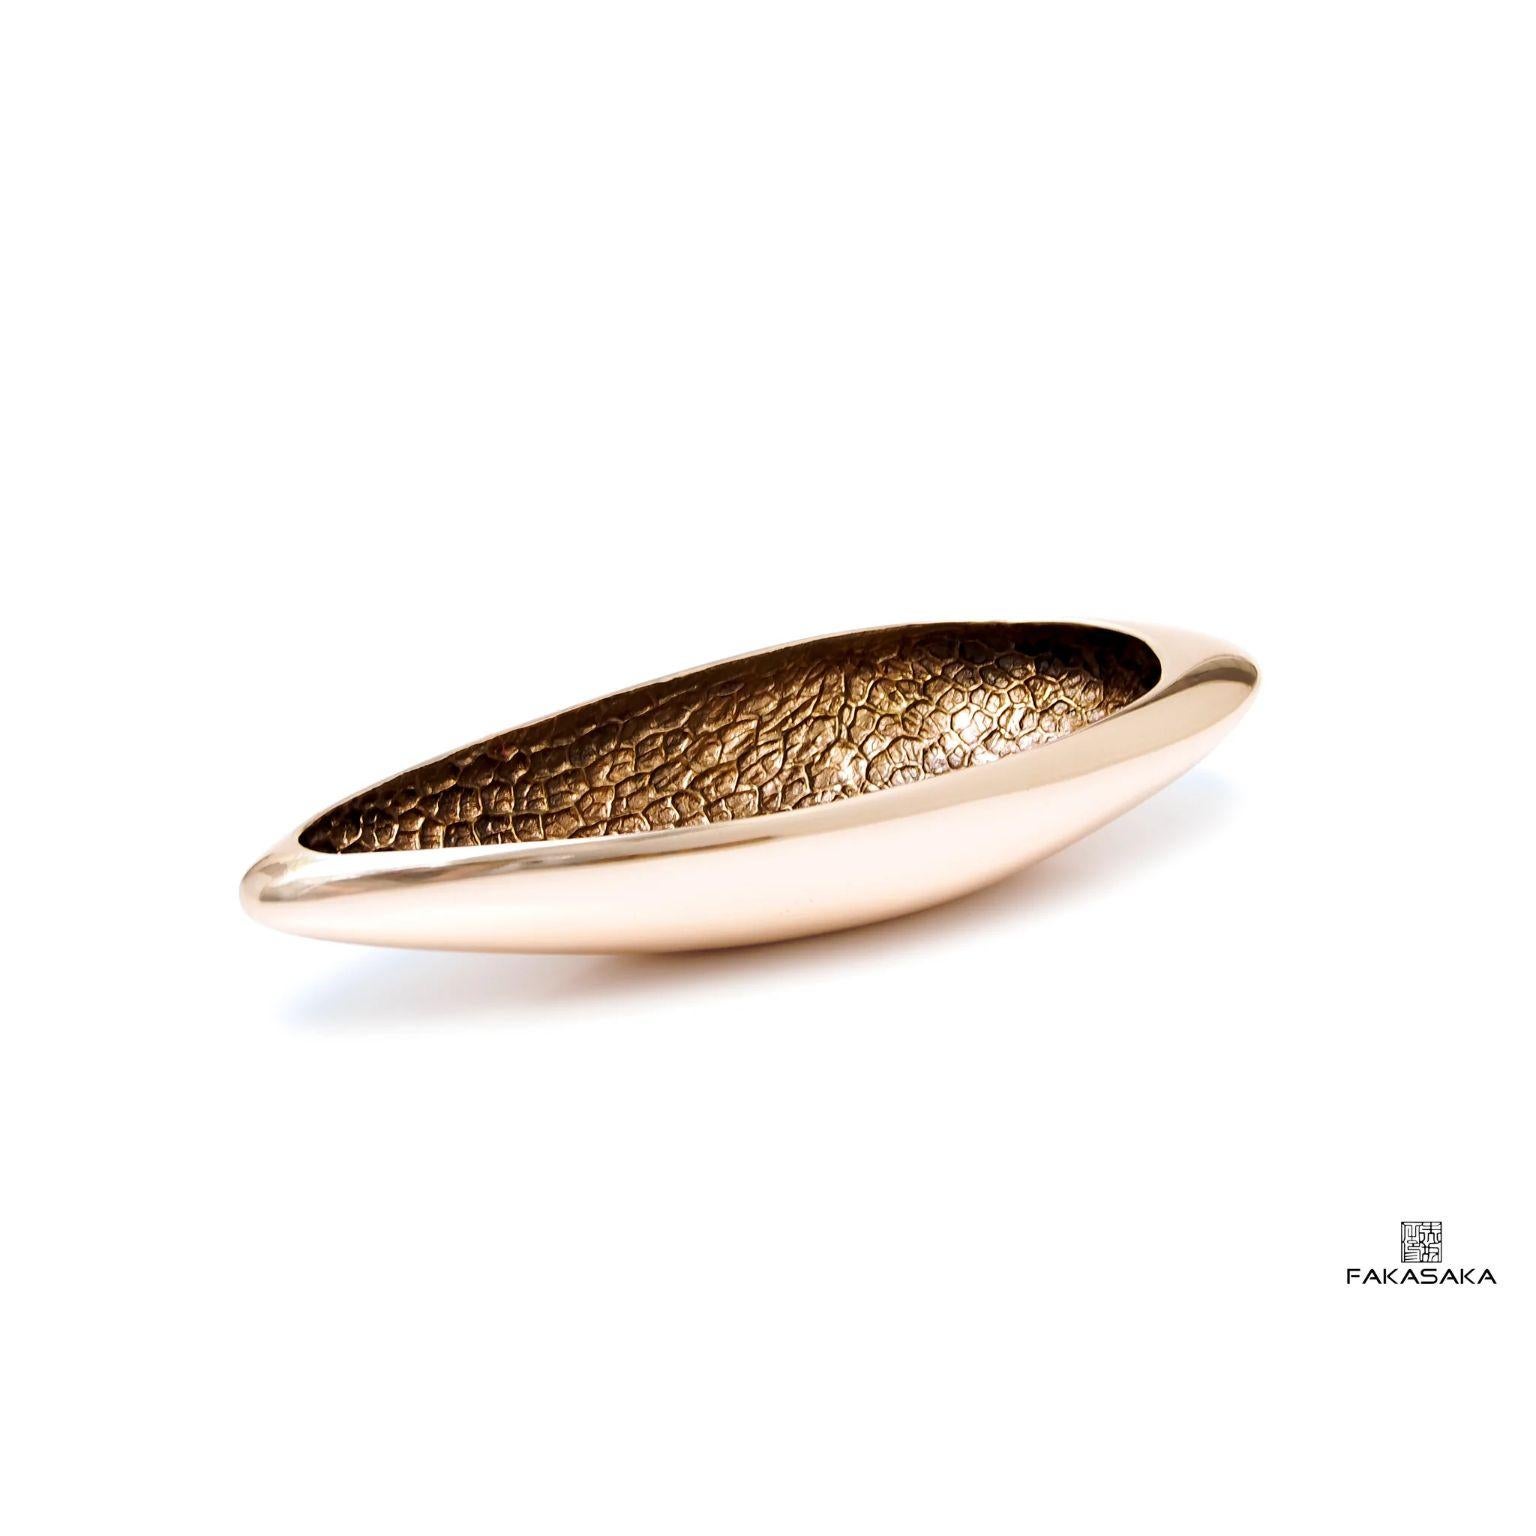 Donna-Schale von Fakasaka Design
Abmessungen: B 36 cm T 12 cm H 7 cm.
MATERIAL: polierte Bronze.

 FAKASAKA ist ein Designunternehmen, das sich auf die Herstellung von hochwertigen Möbeln, Leuchten, Dekorationsobjekten, Juwelen und Accessoires